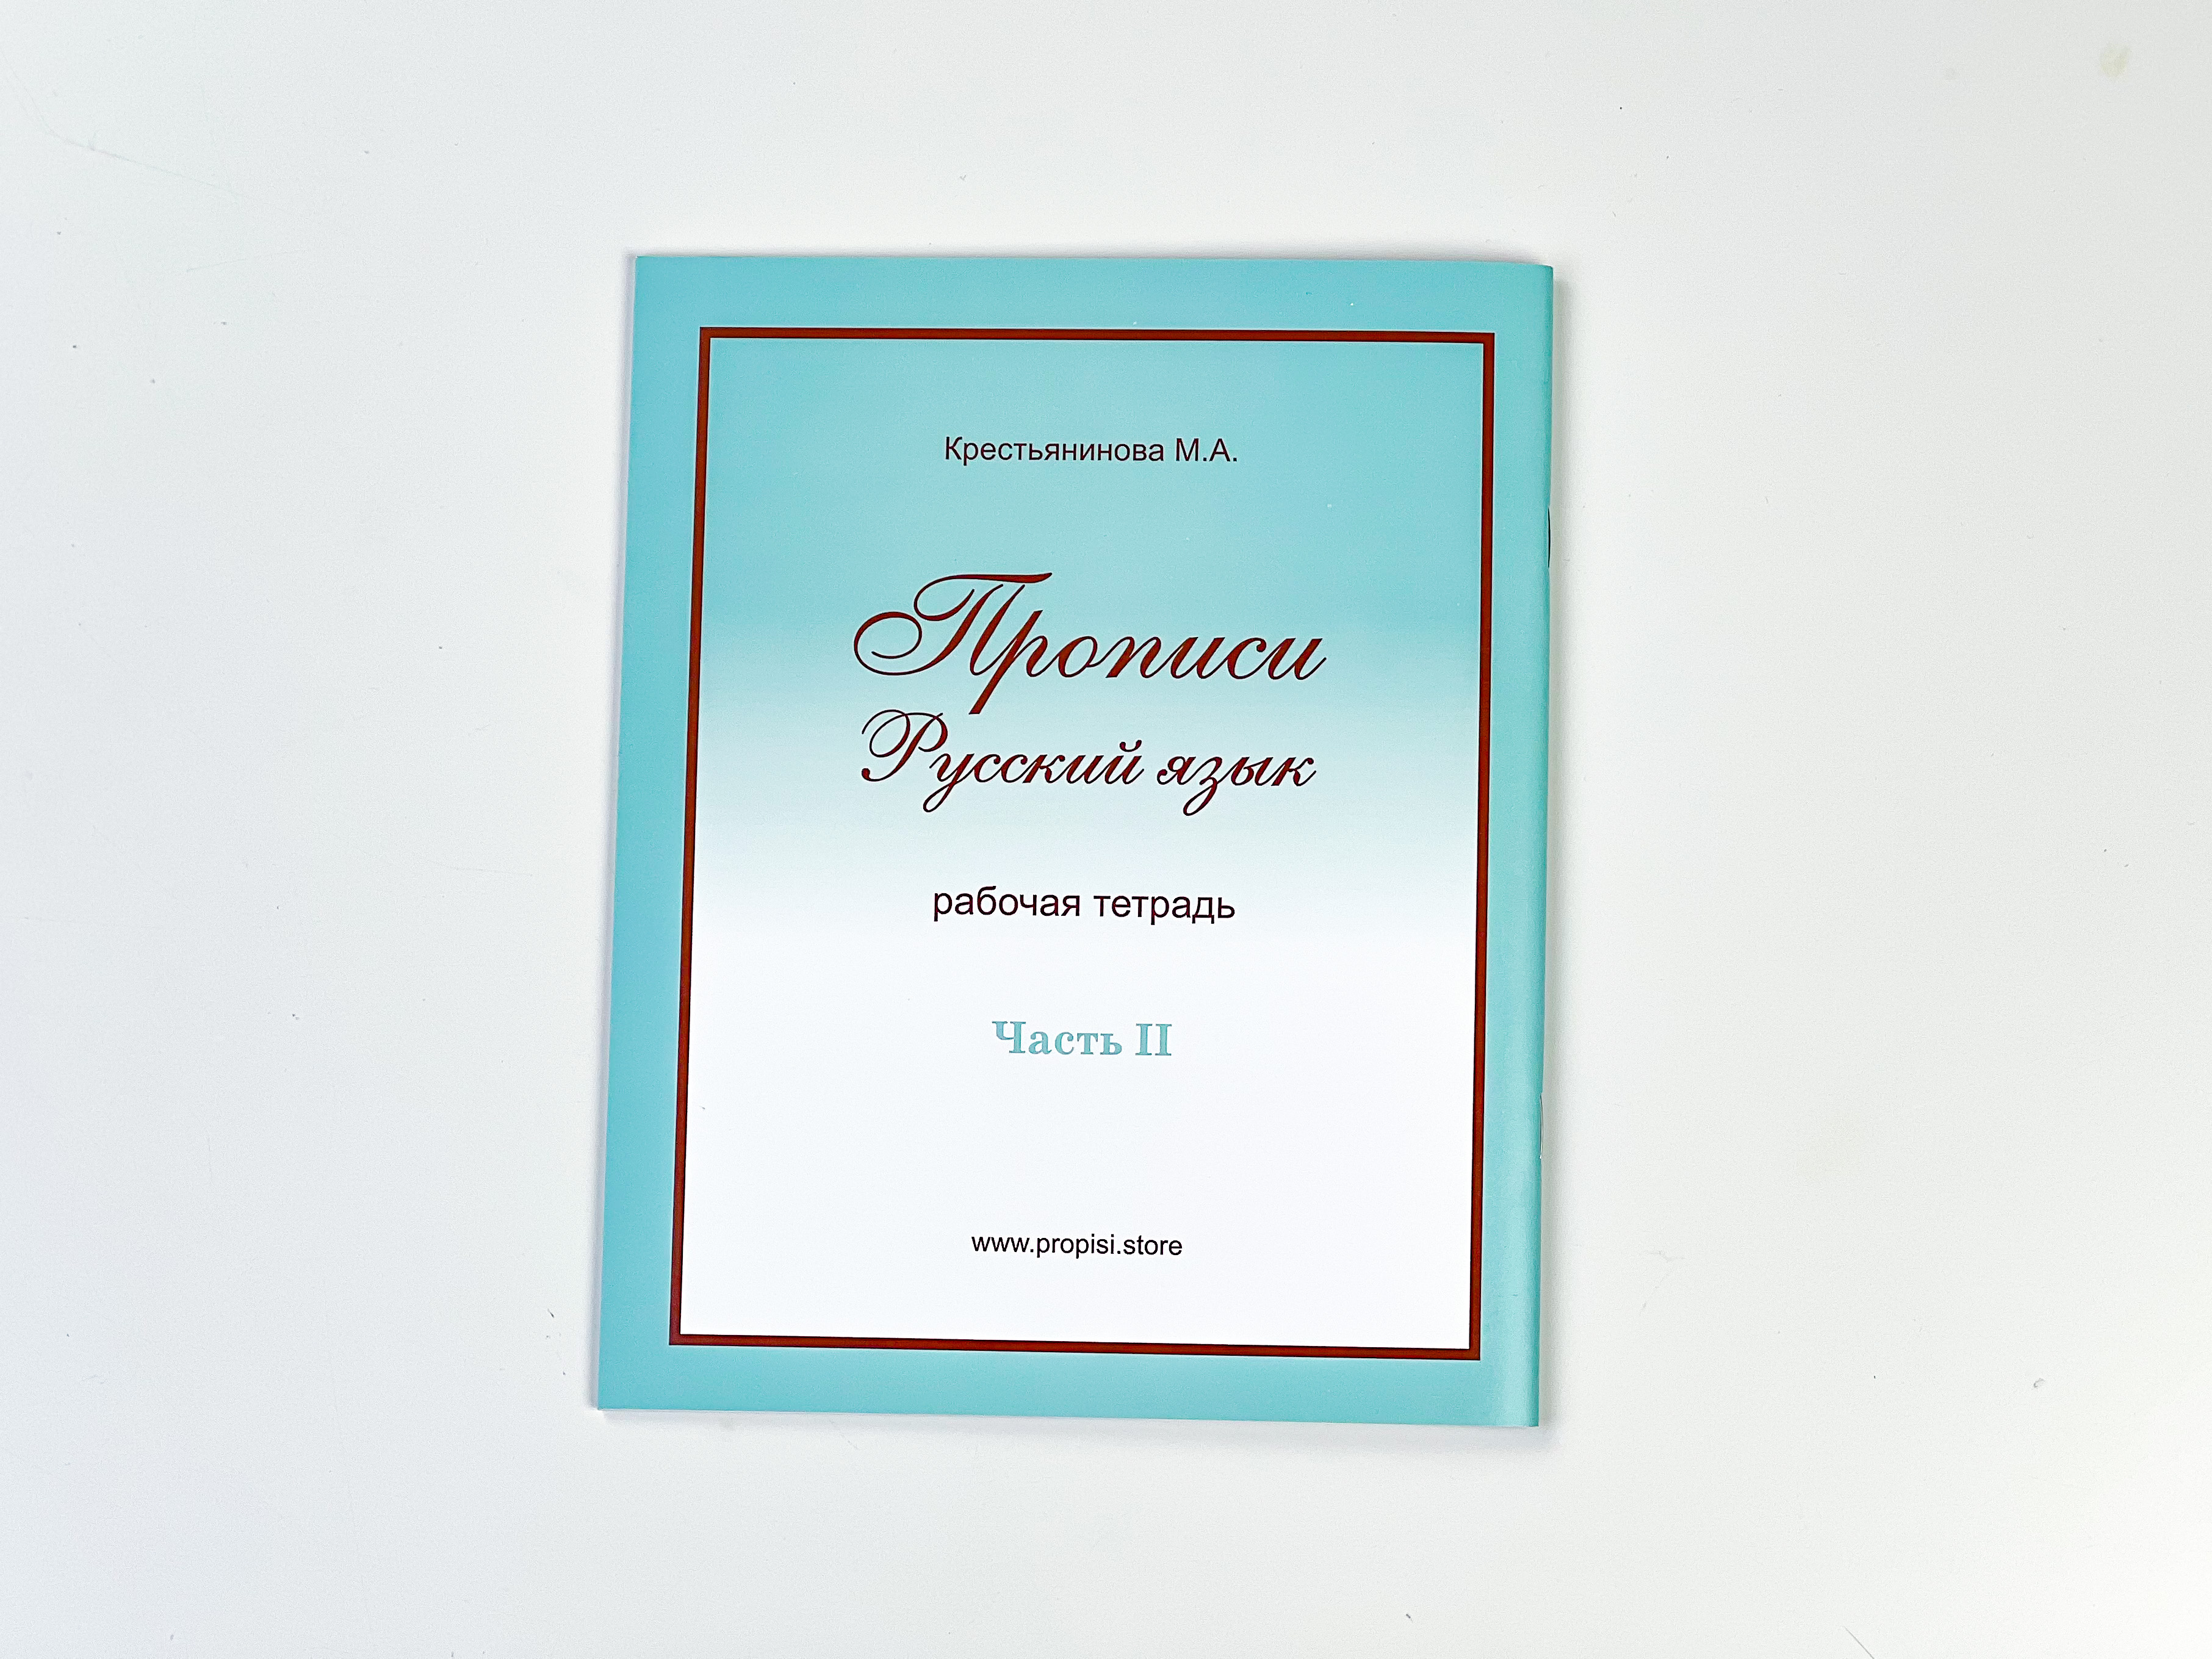 Тетради рабочие propisi.store Прописи русский язык 2 шт А5 - фото 17